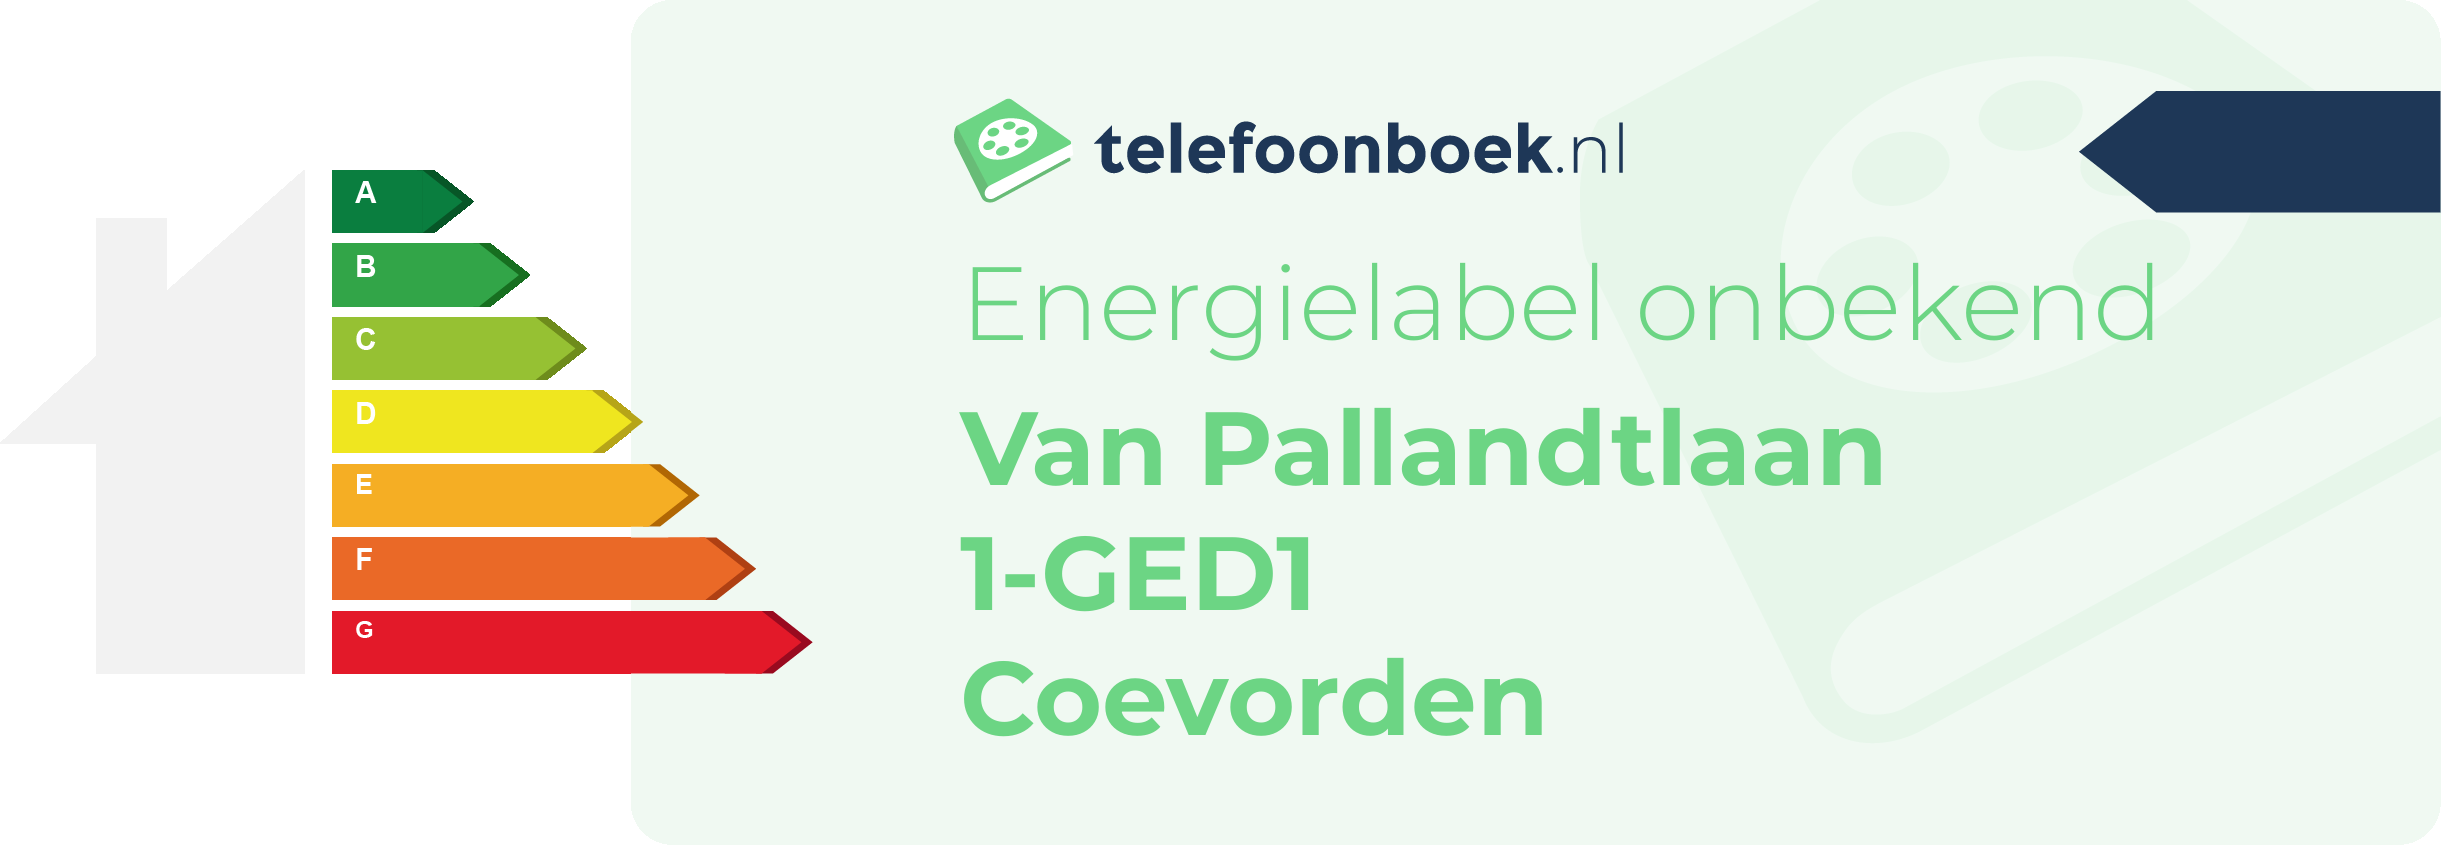 Energielabel Van Pallandtlaan 1-GED1 Coevorden